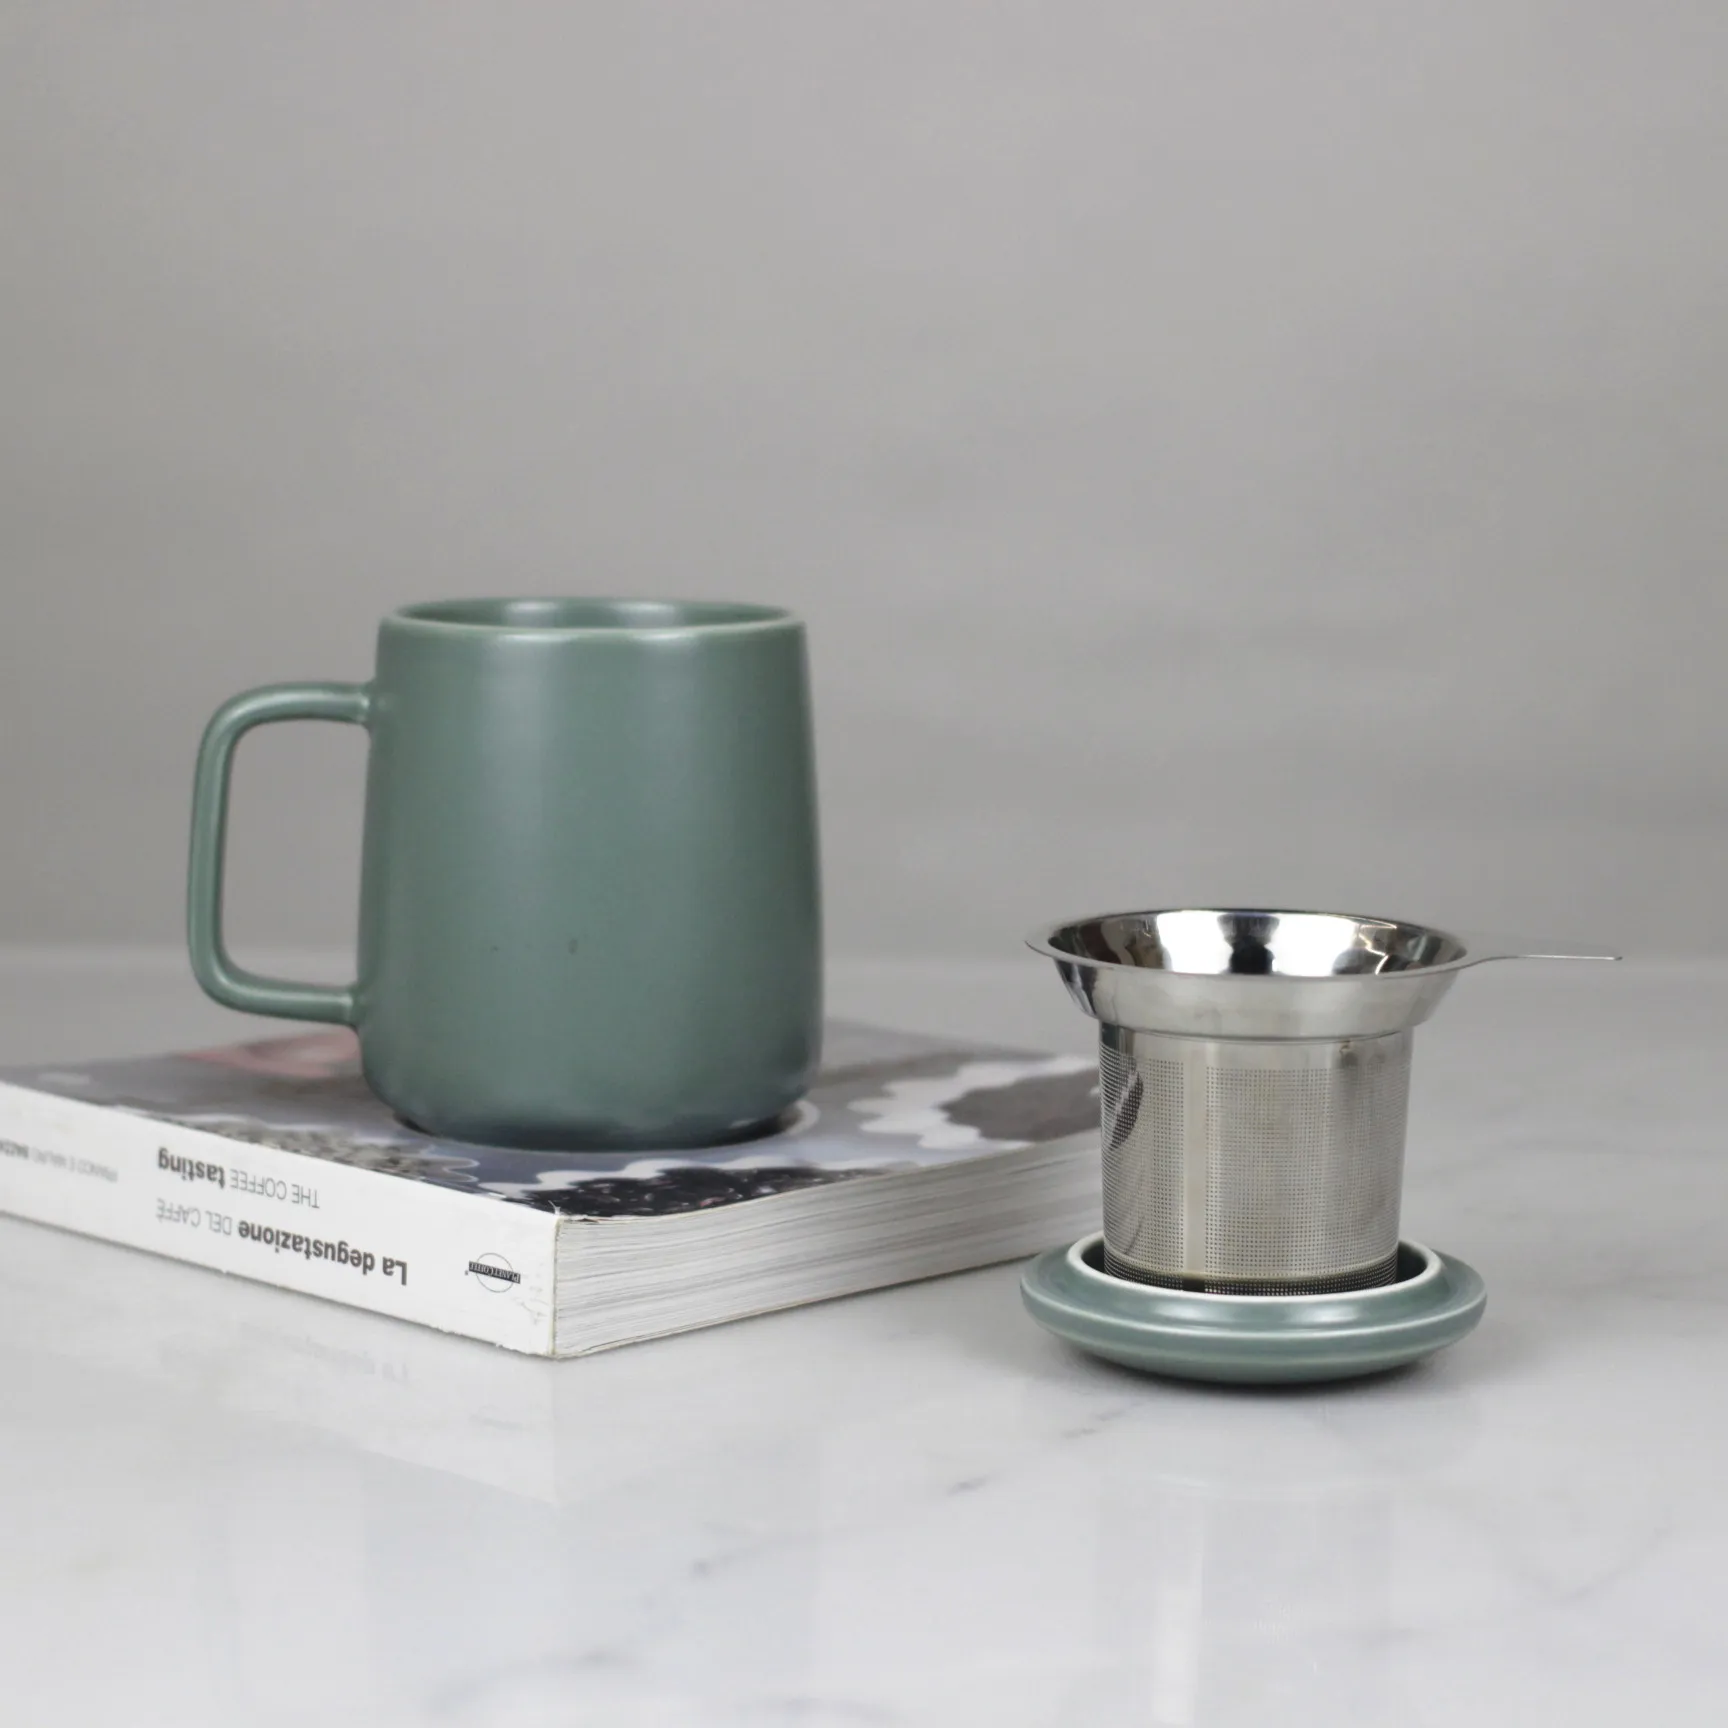 600ml Porzellan-Tee tasse Große grüne Keramik becher mit Deckel und Aufguss für Büro-und Heimgebrauch Geschenk der Liebe